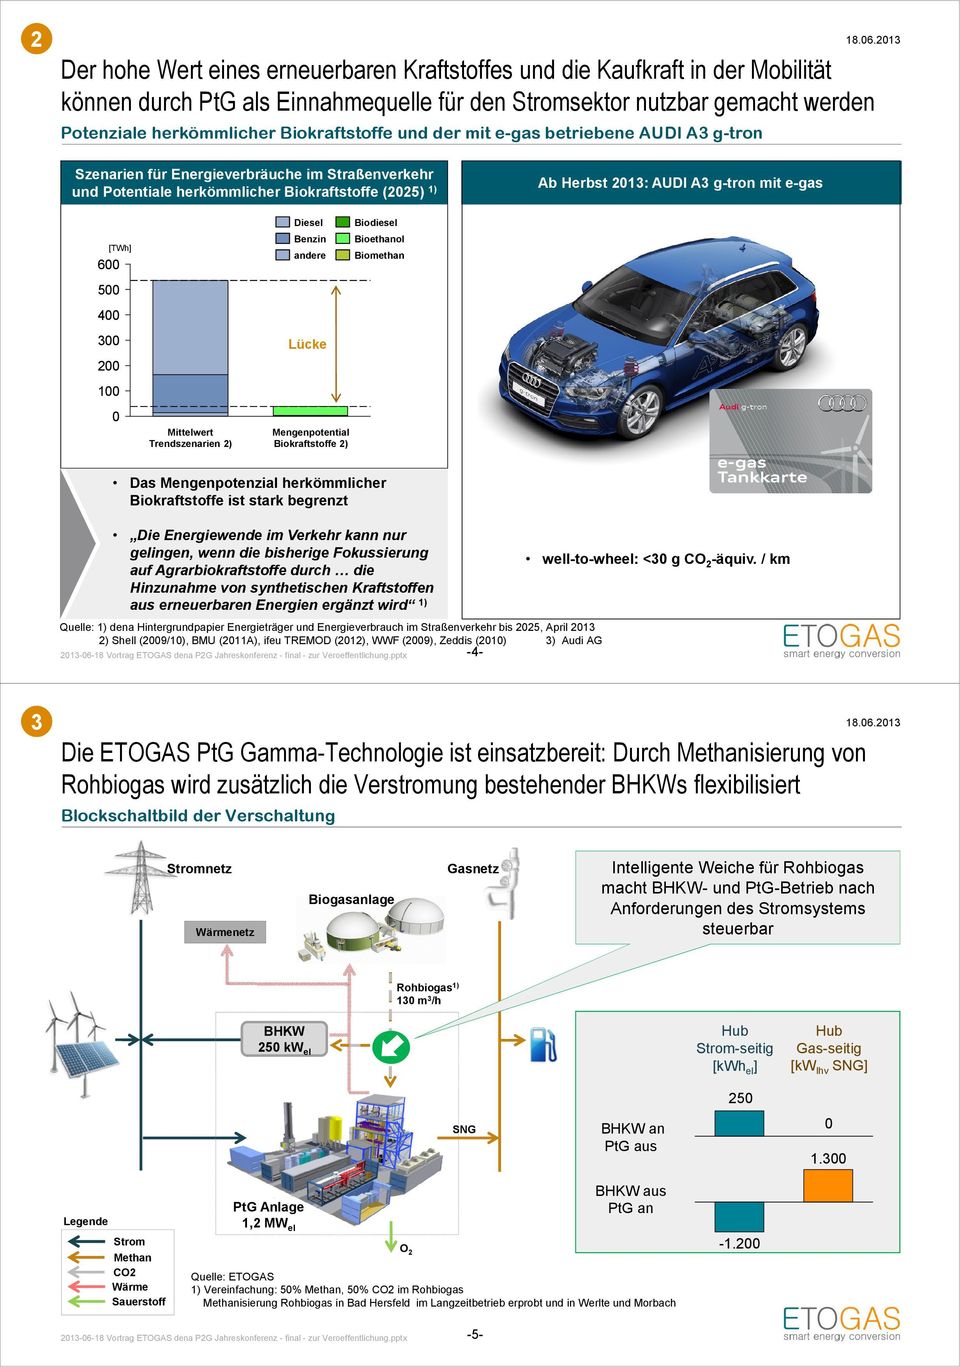 2013: CO2-Emissionen AUDI A3 g-tron mit well-to-wheel e-gas [TWh] 600 500 400 300 200 100 0 Mittelwert Trendszenarien 2) Diesel Benzin andere Lücke Mengenpotential Biokraftstoffe 2) Biodiesel